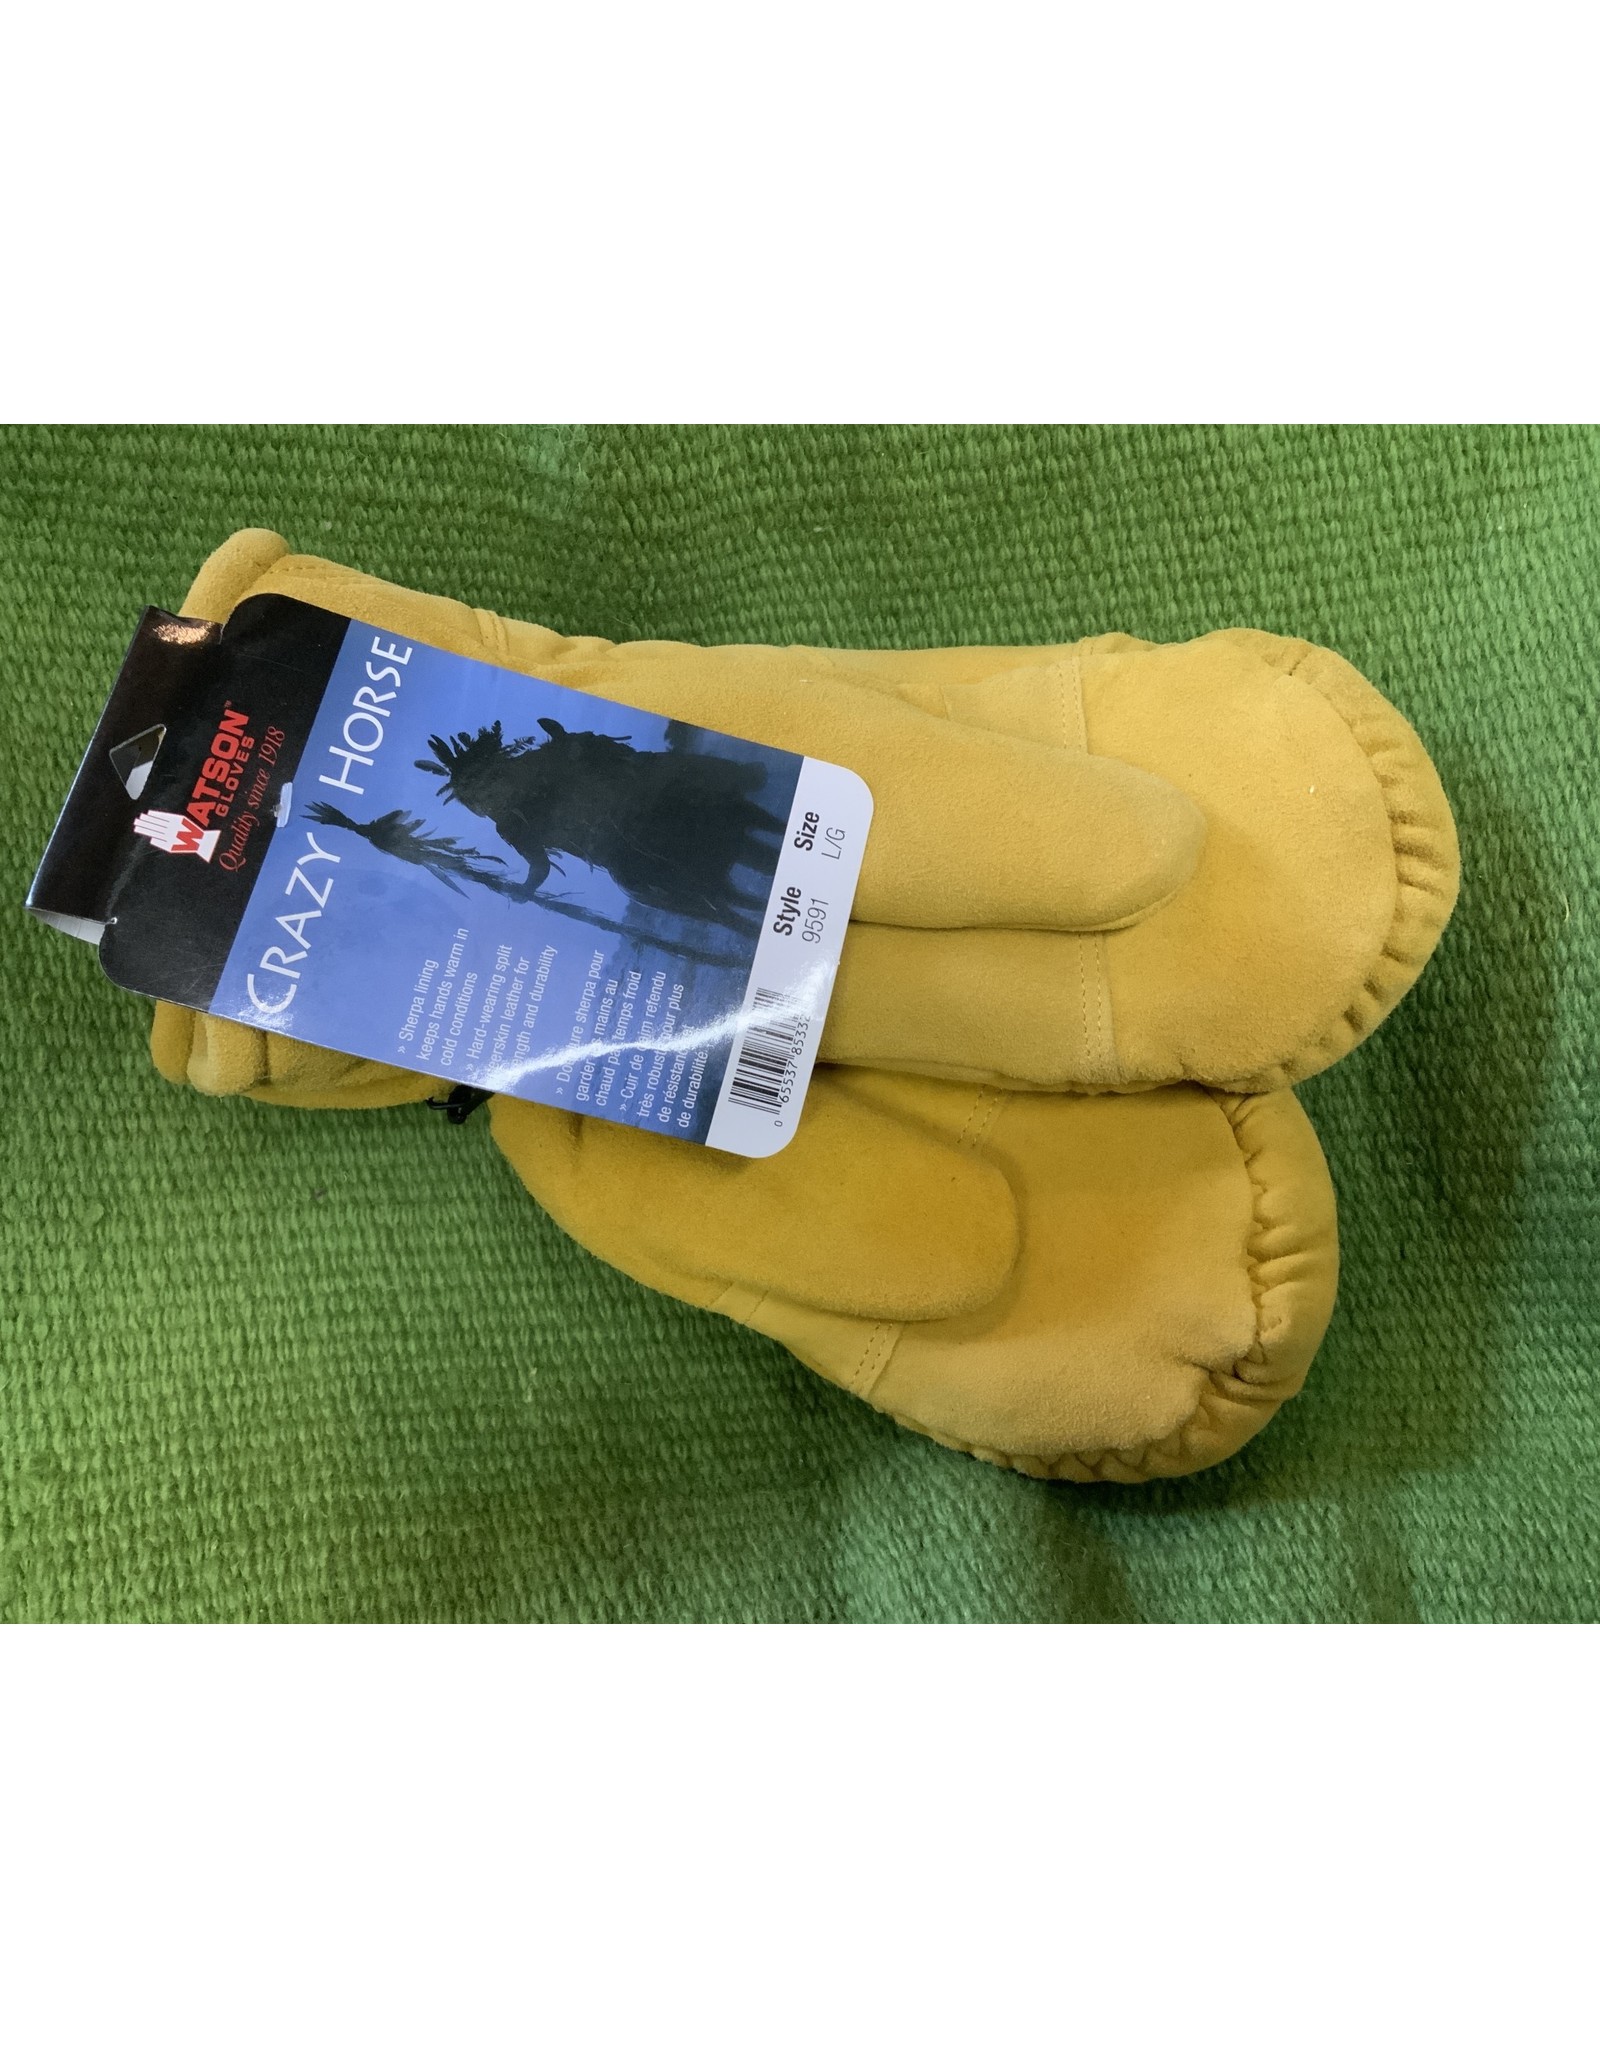 Watson Gloves Gloves* Crazy Horse Mitt 9591 - L